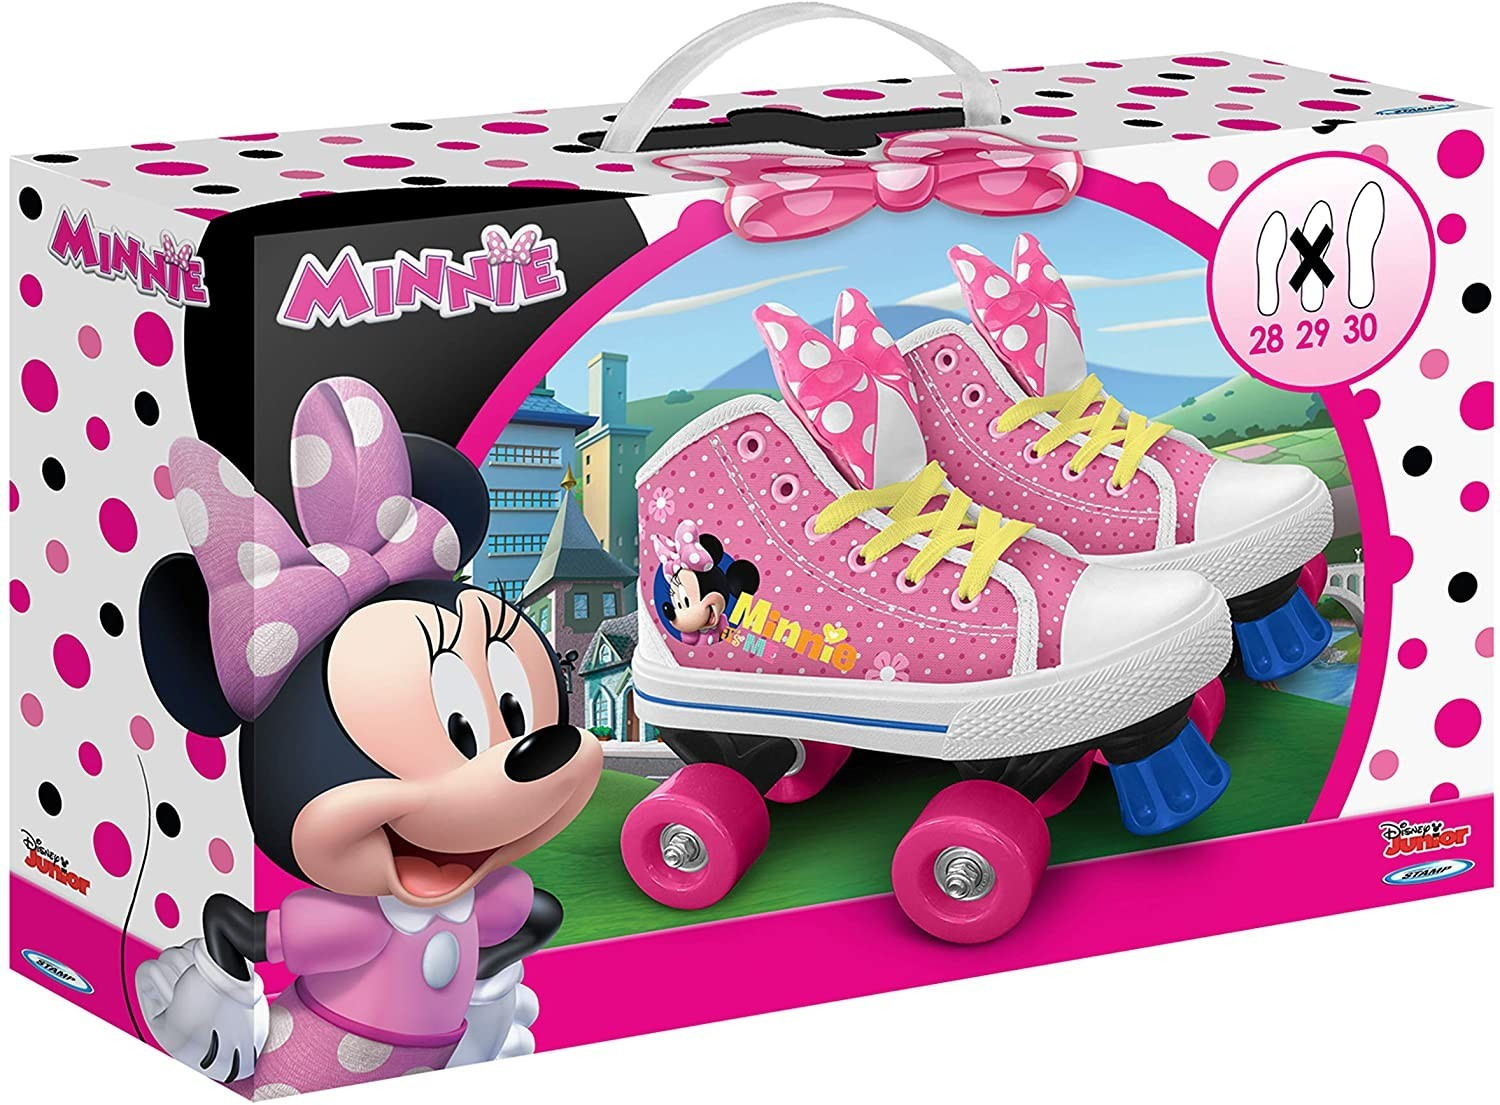 Disney patins à roulettes Minnie Mouse filles rose/blanc - Roller